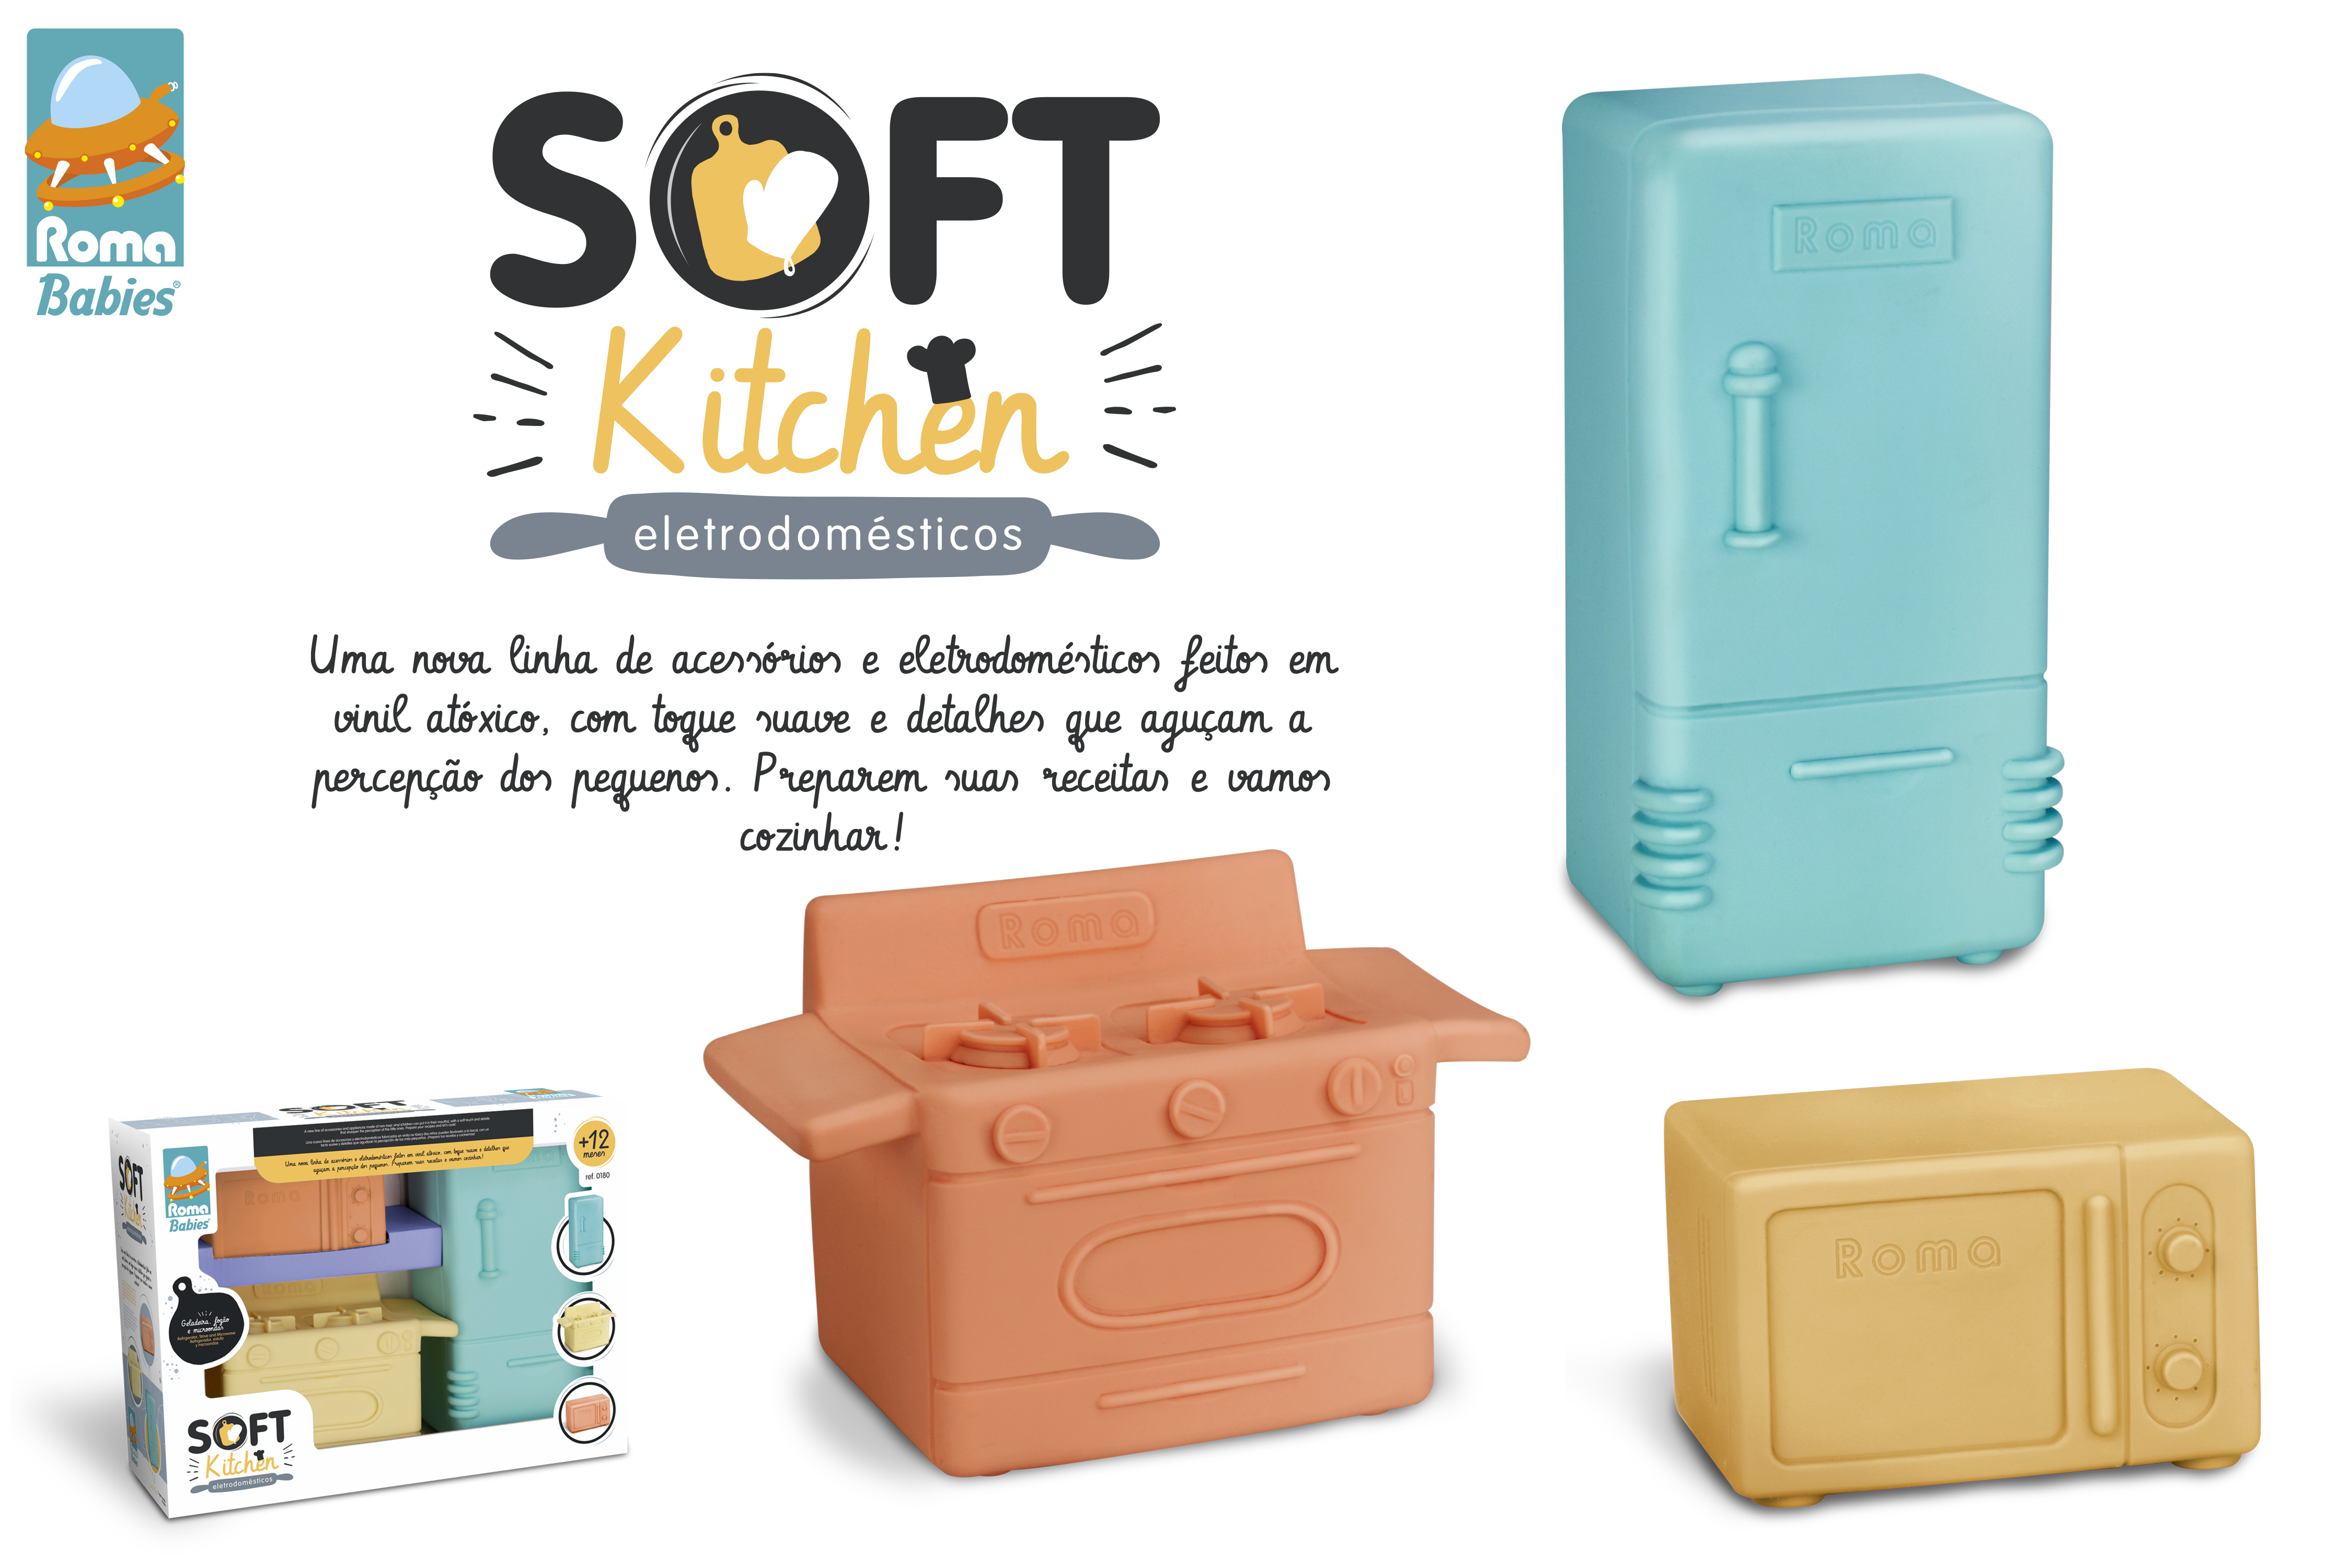 0180 - Soft Kitchen - Elétrodomésticos.png